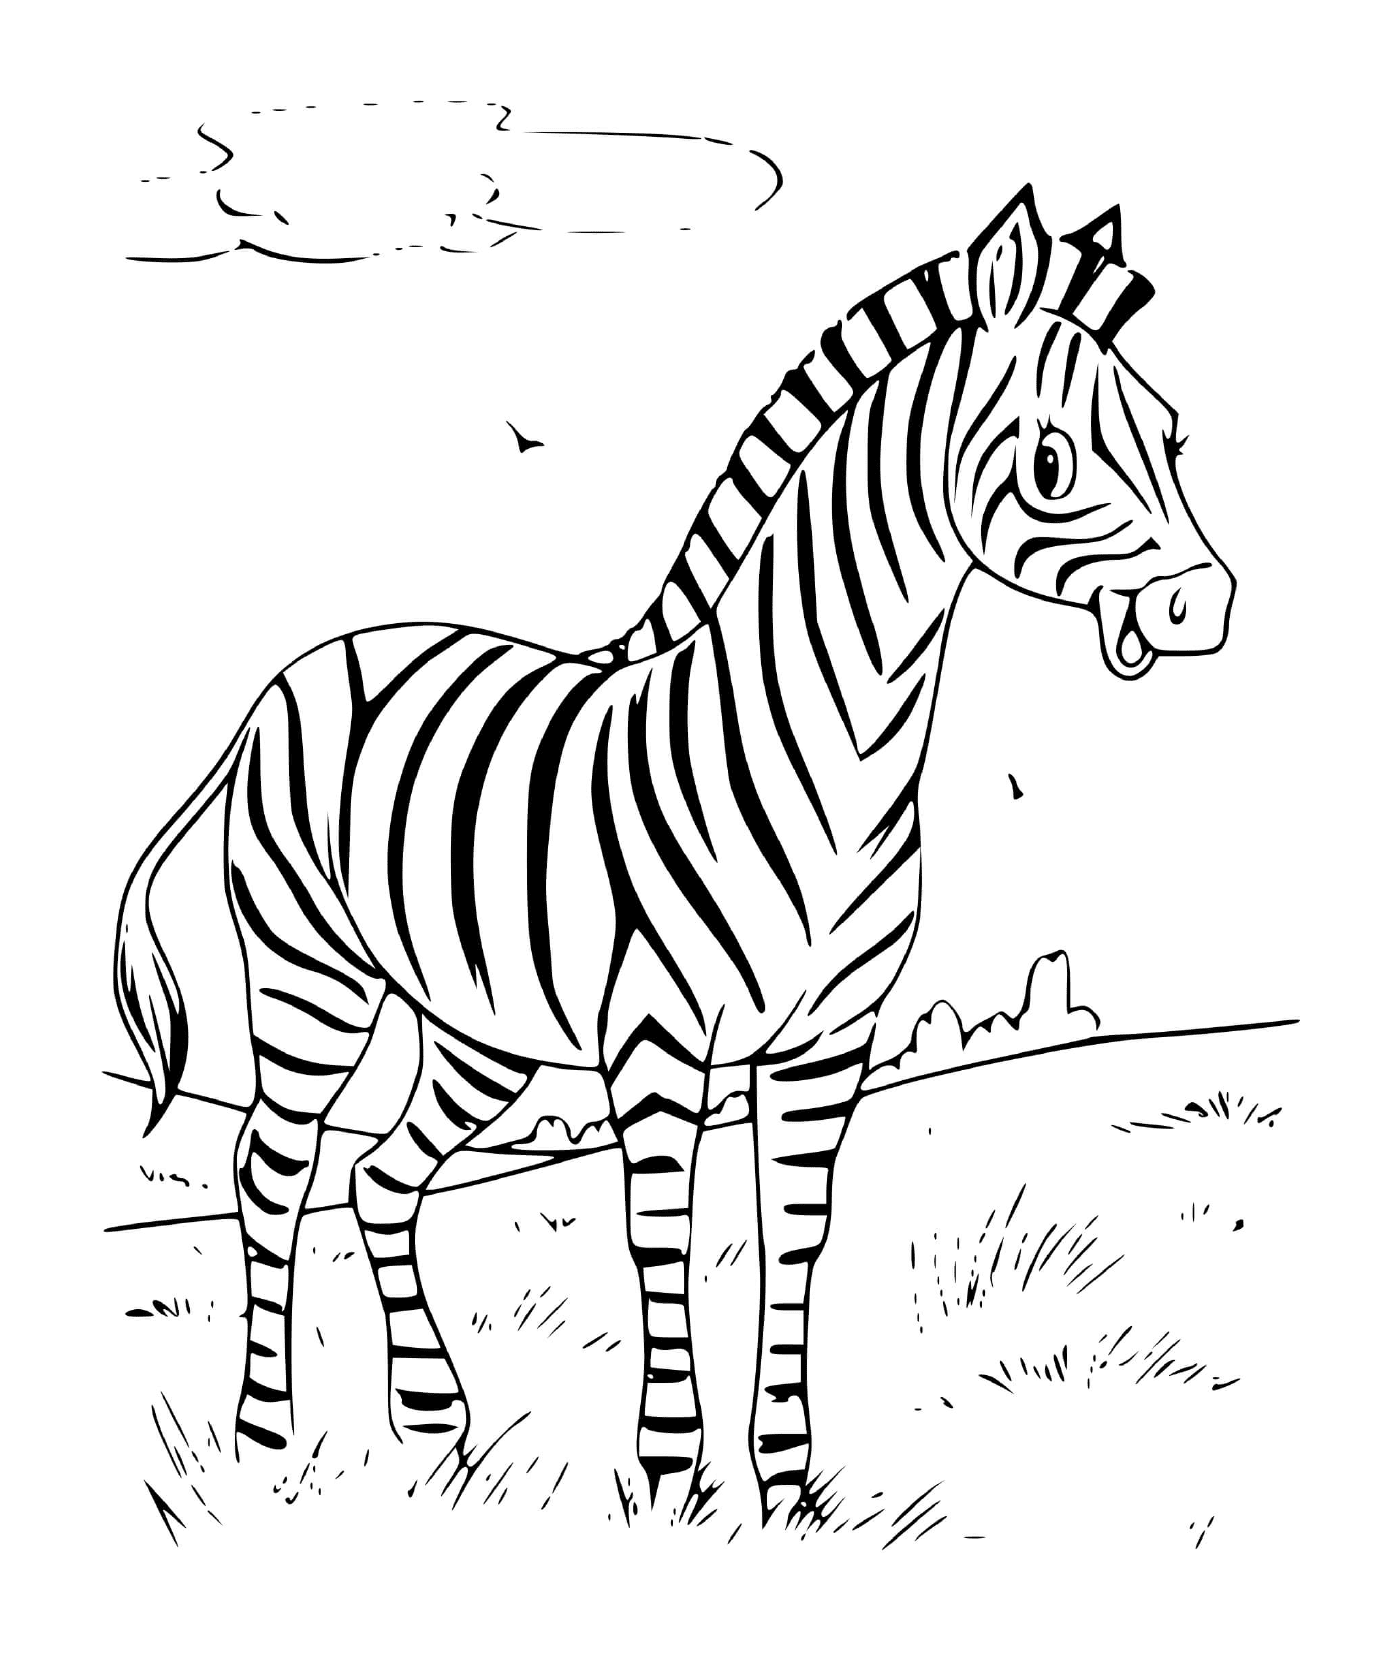  zebra strisce nere sorridenti 